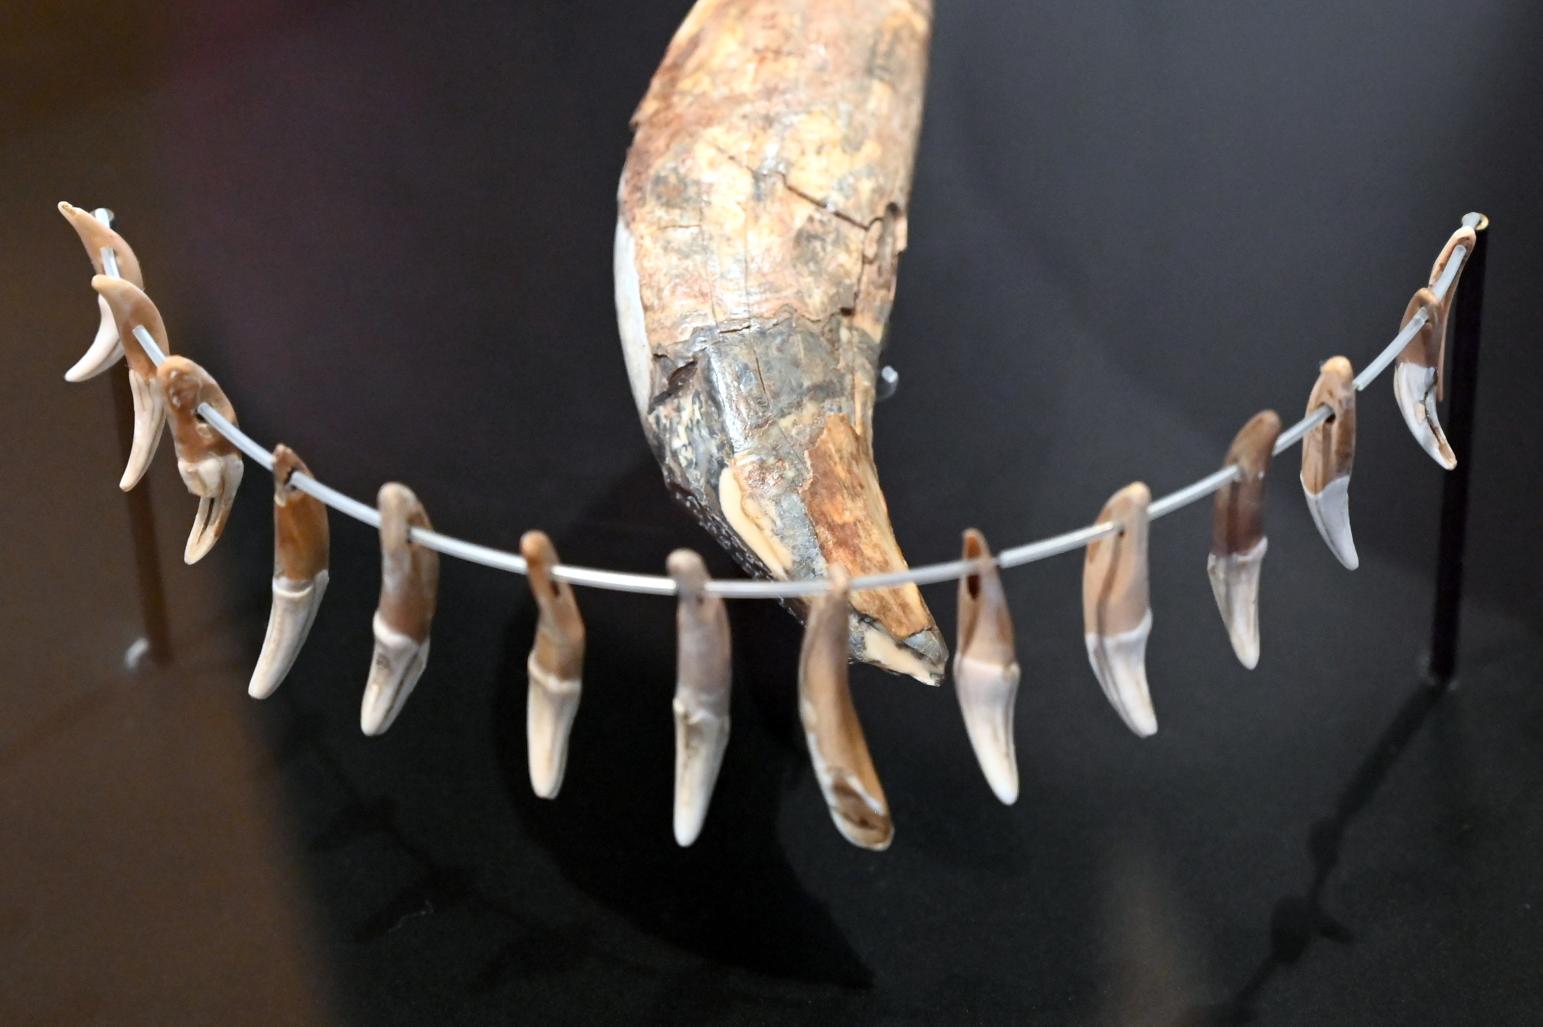 18 durchlochte Fuchszähne, Neolithikum (Jungsteinzeit), 5500 - 1700 v. Chr., 3400 - 2800 v. Chr.